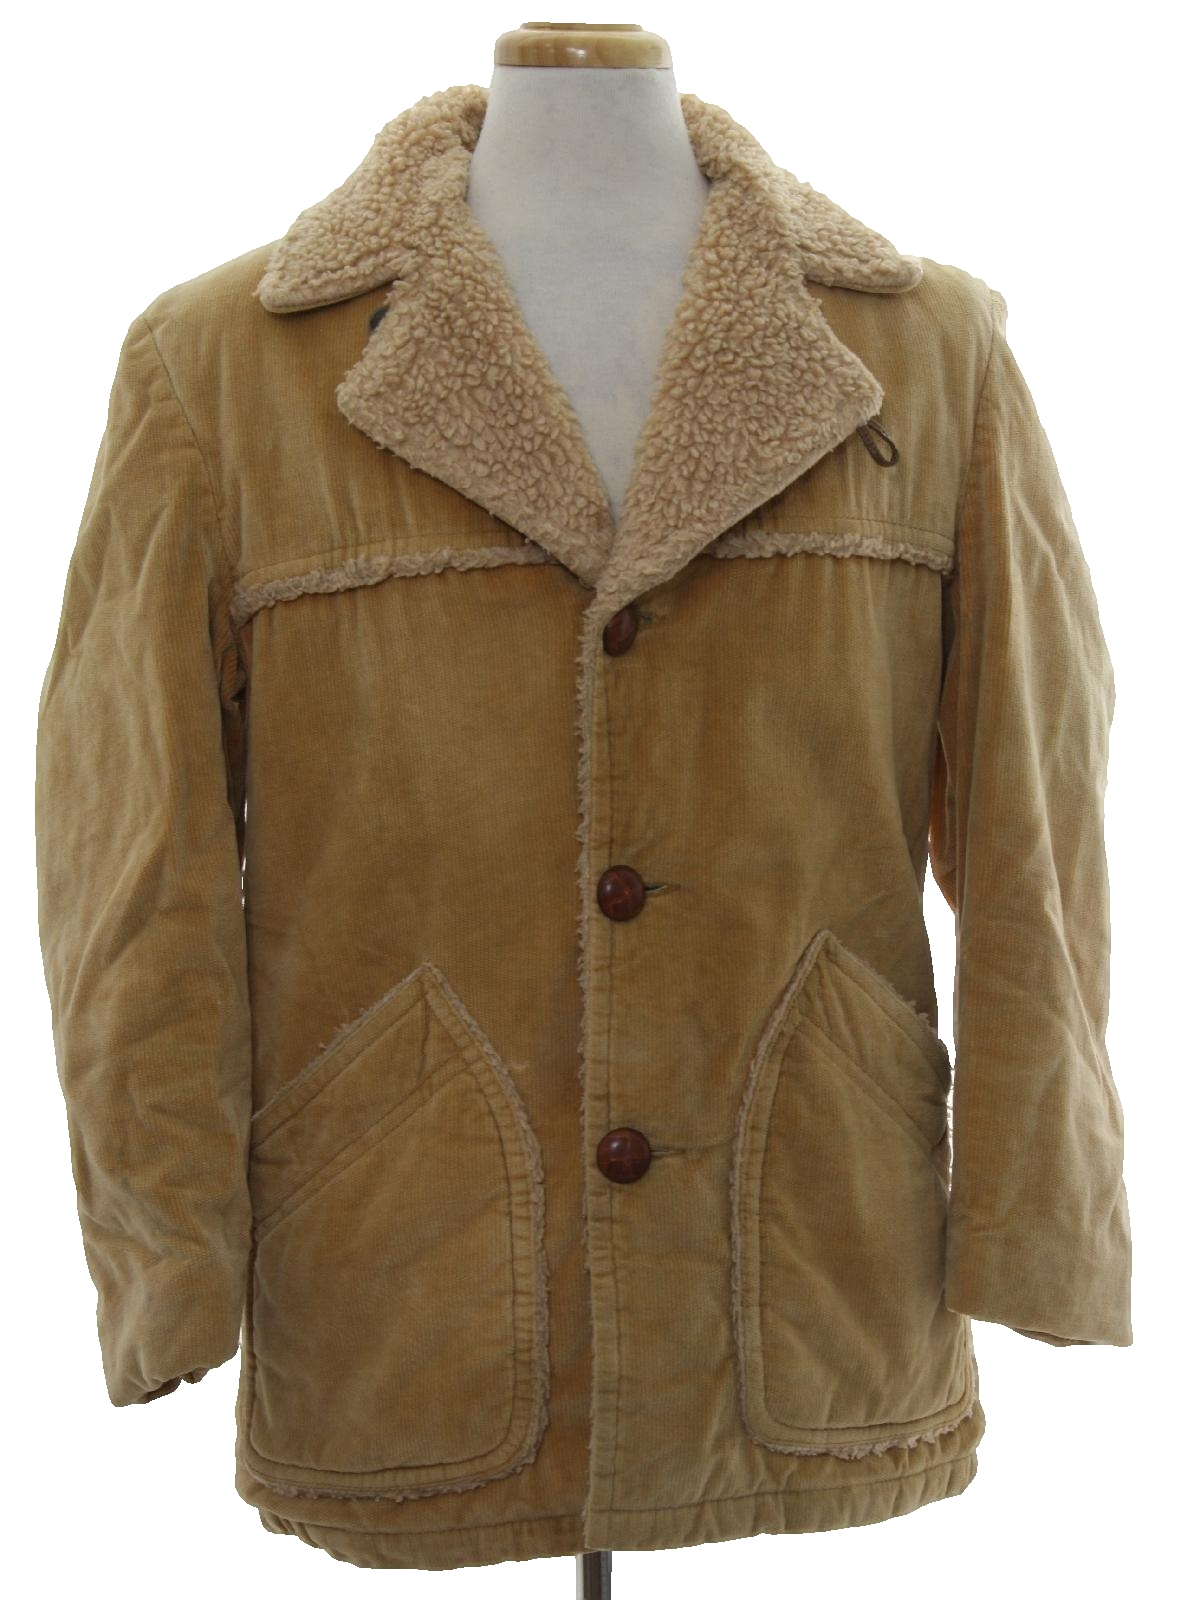 McGregor 70's Vintage Jacket: 70s -McGregor- Mens tan wide wale cotton ...